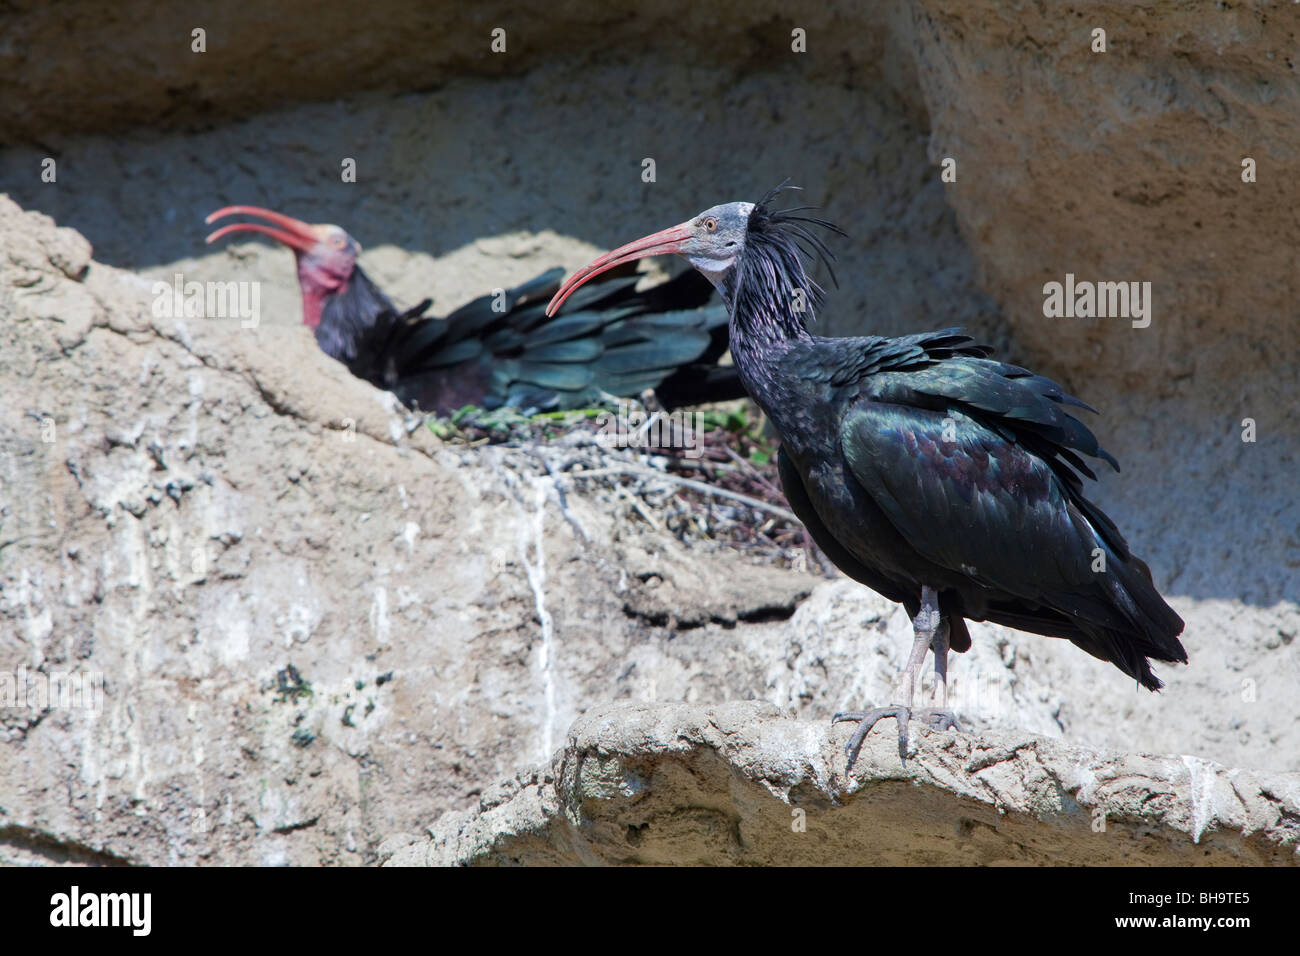 Nördlichen kahlen Ibisse, Einsiedler Ibis / Waldrapp (Geronticus Eremita) am Nest in Felsen stehen, in Gefangenschaft, Deutschland Stockfoto